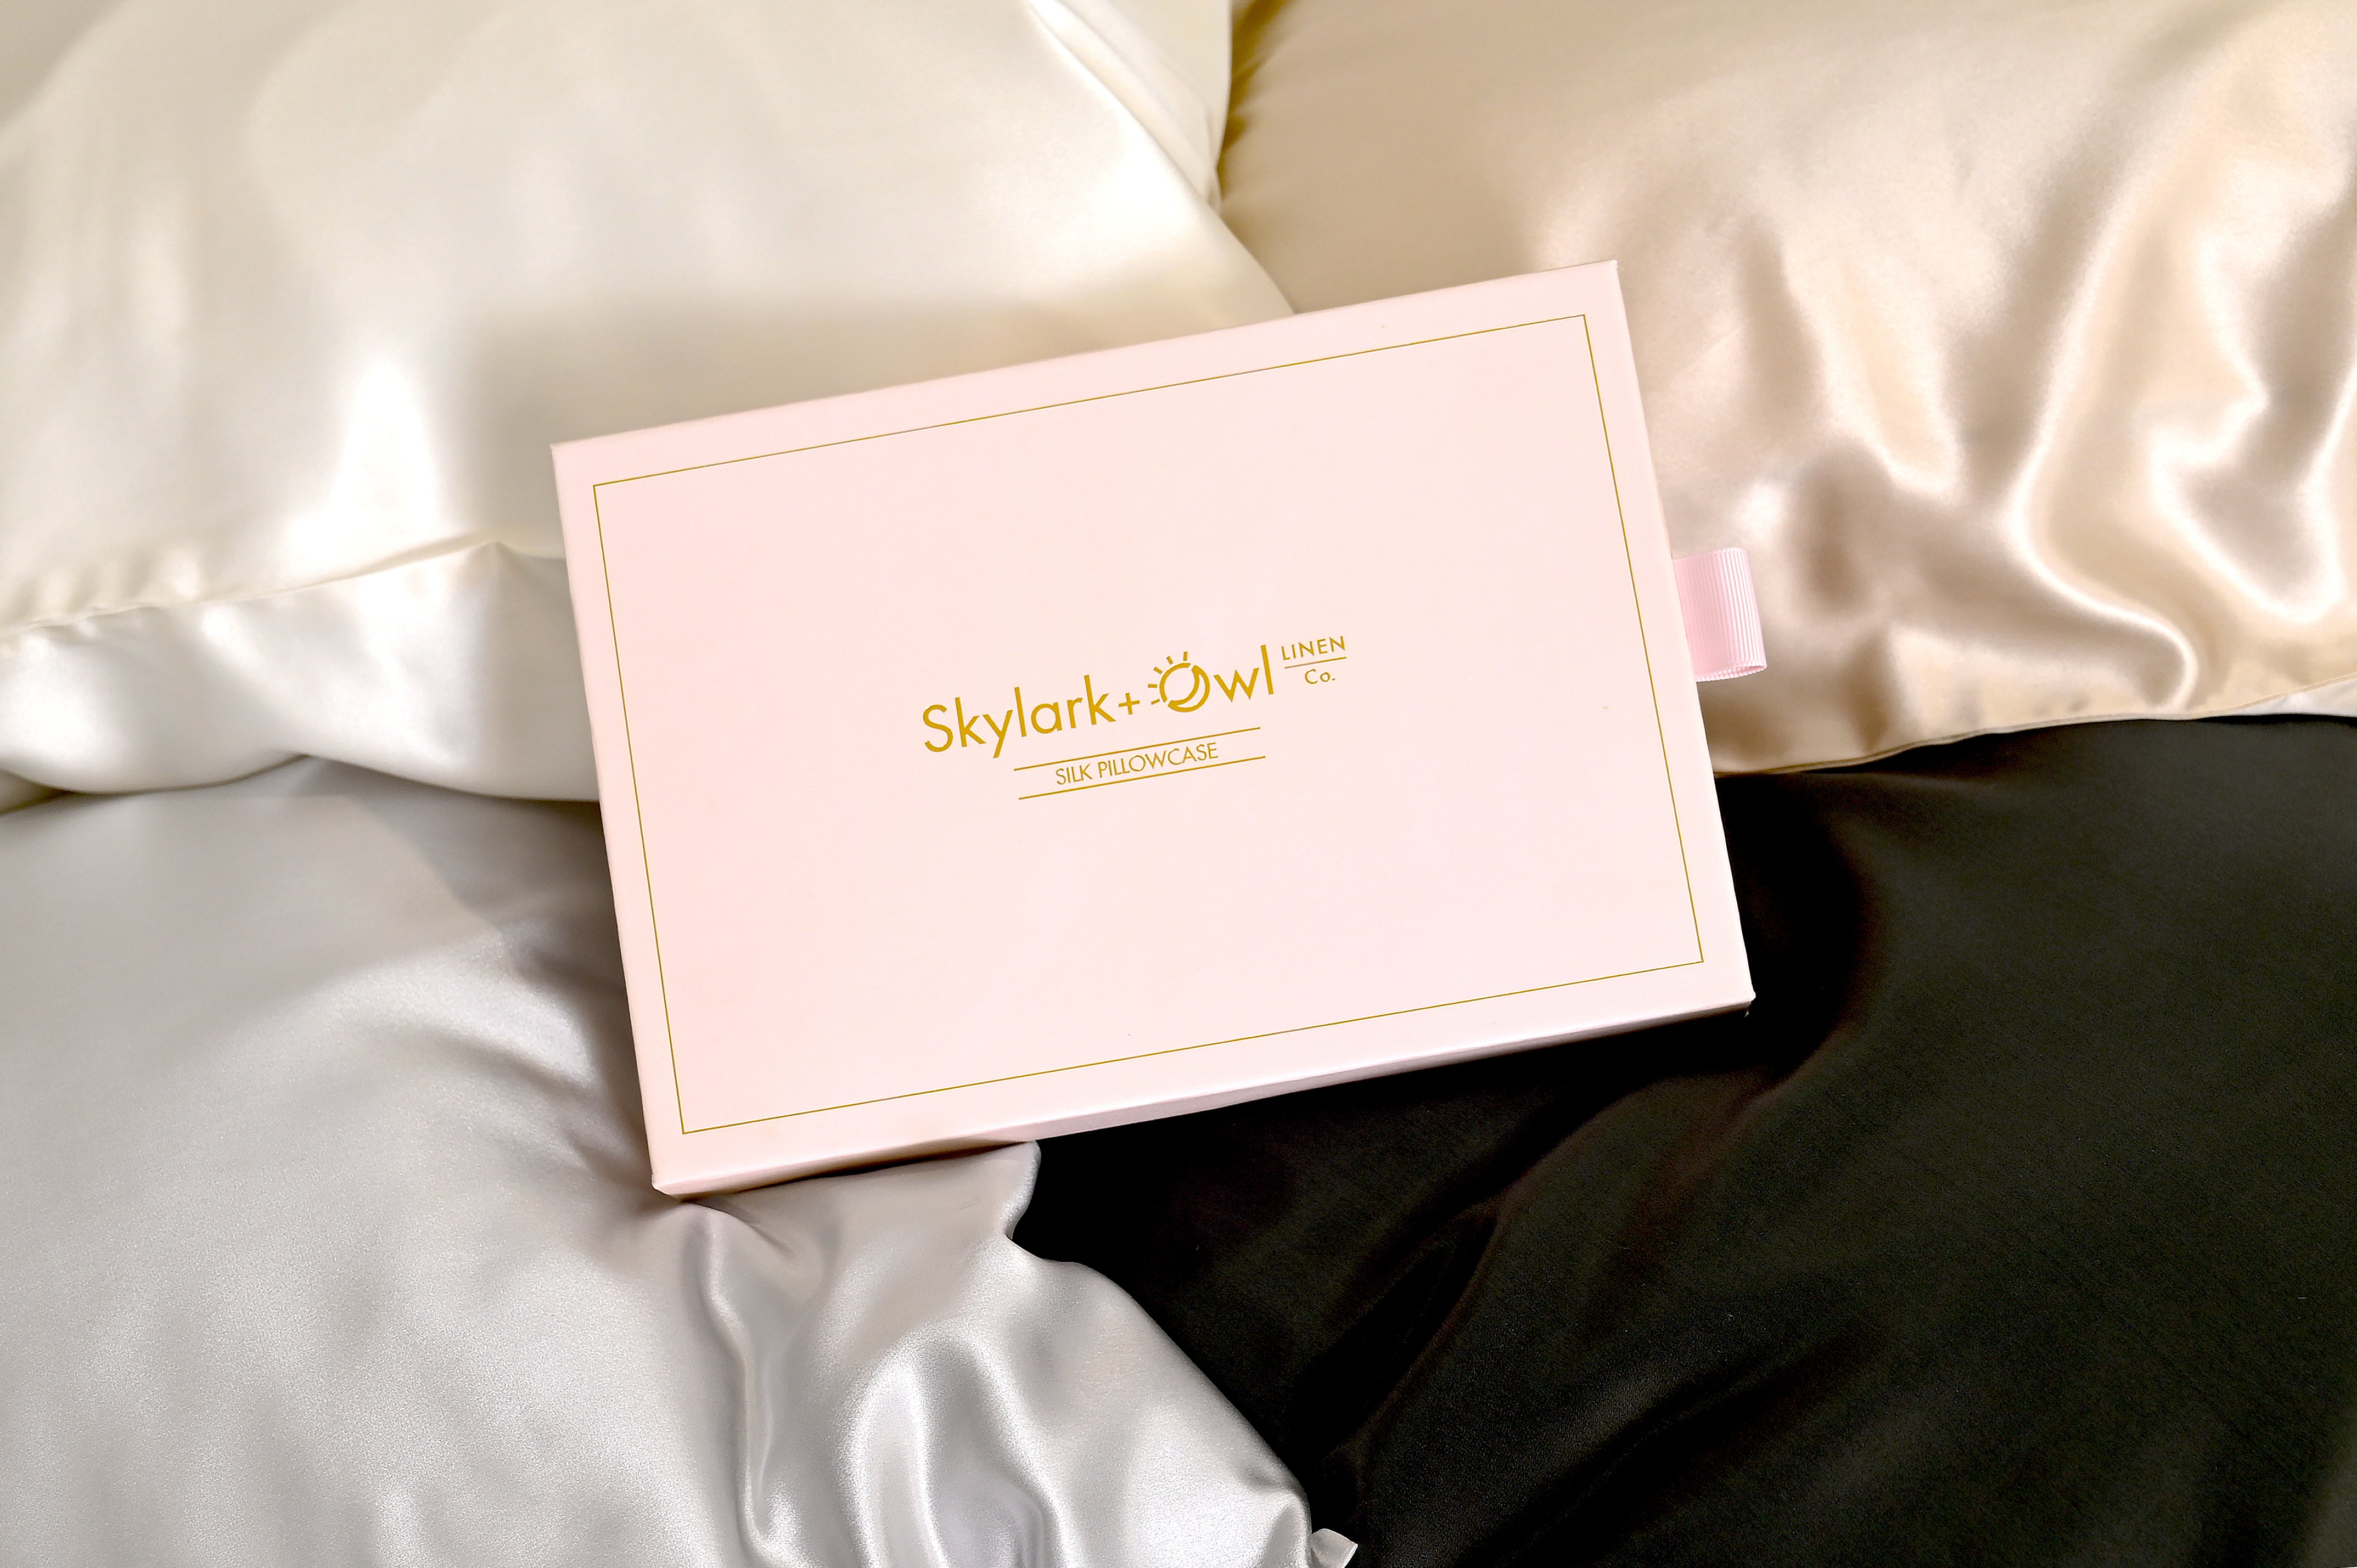 Skylark+Owl Silk Pillowcase luxury box 